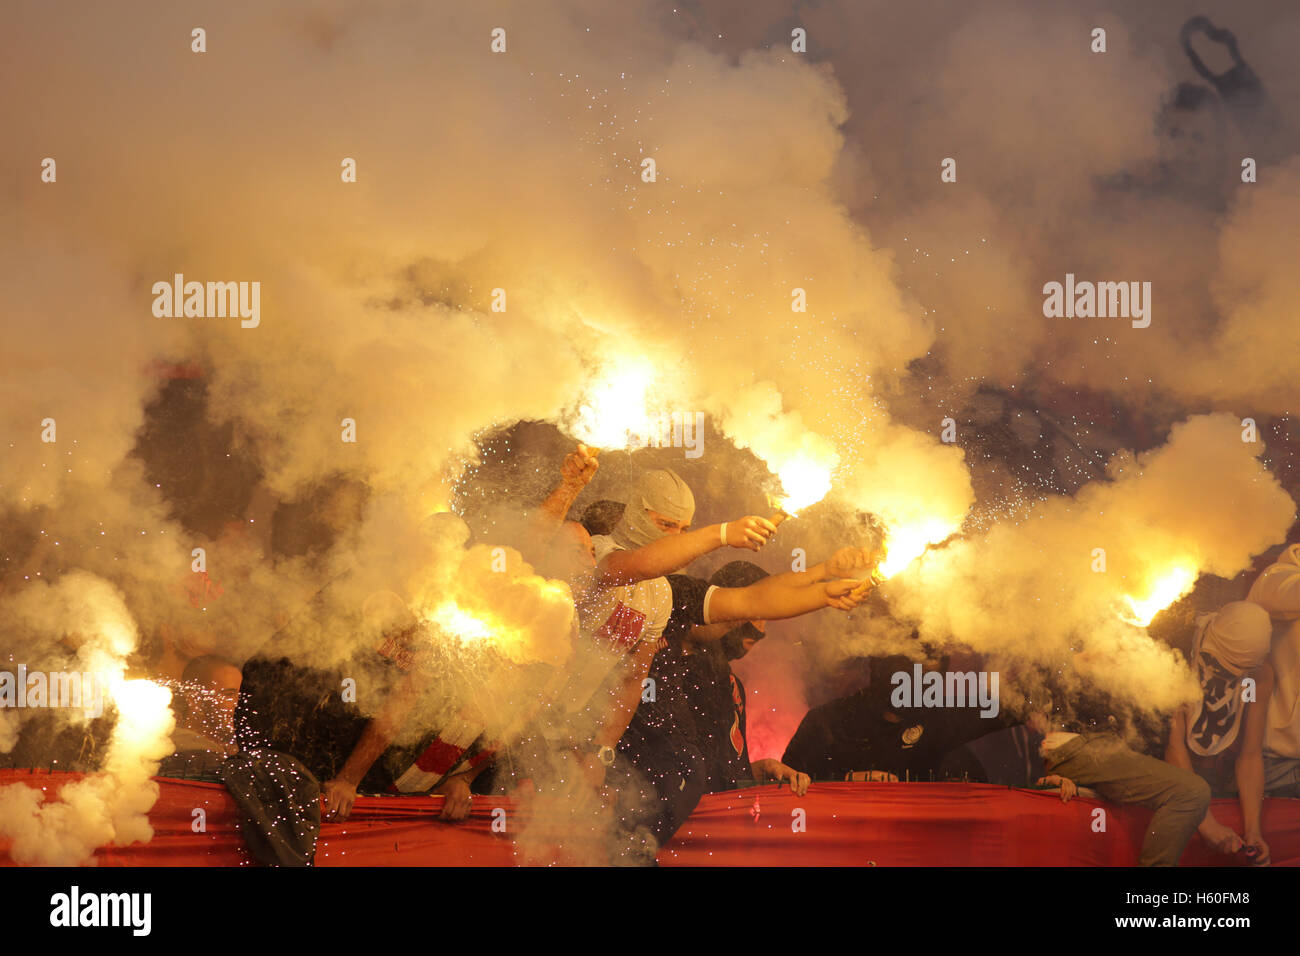 Ultras and fire immagini e fotografie stock ad alta risoluzione - Alamy